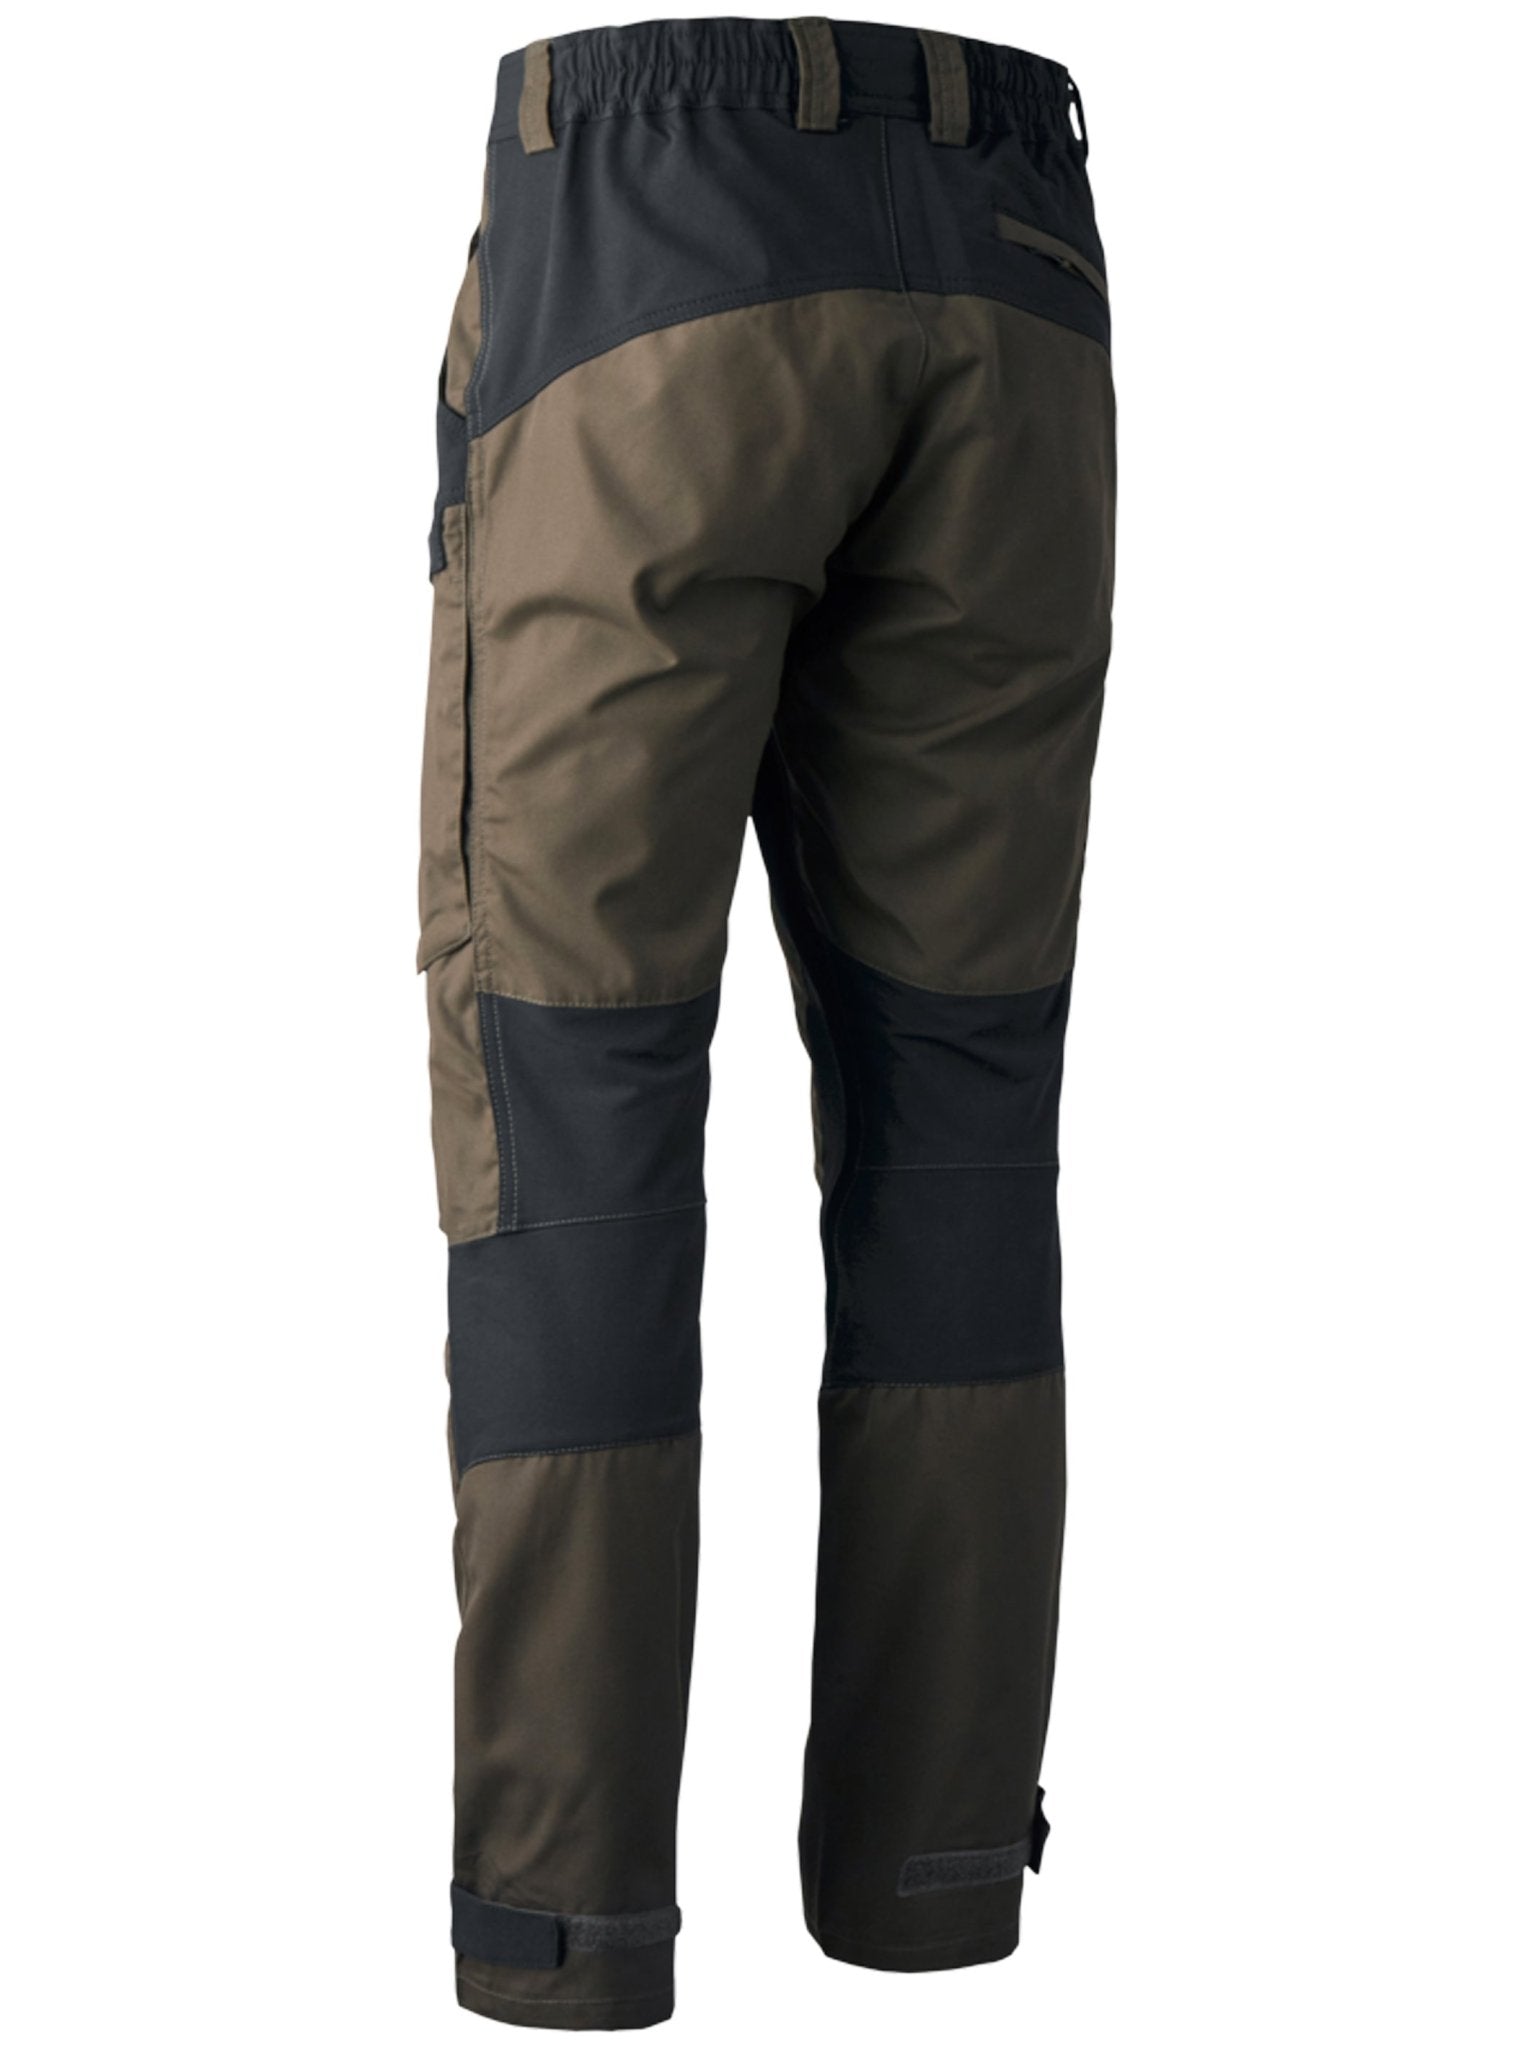 4elementsclothingDeerhunterDeerhunter - Strike Stretch Trousers - Water and dirt resistantTrousers & Jeans3989-381-48